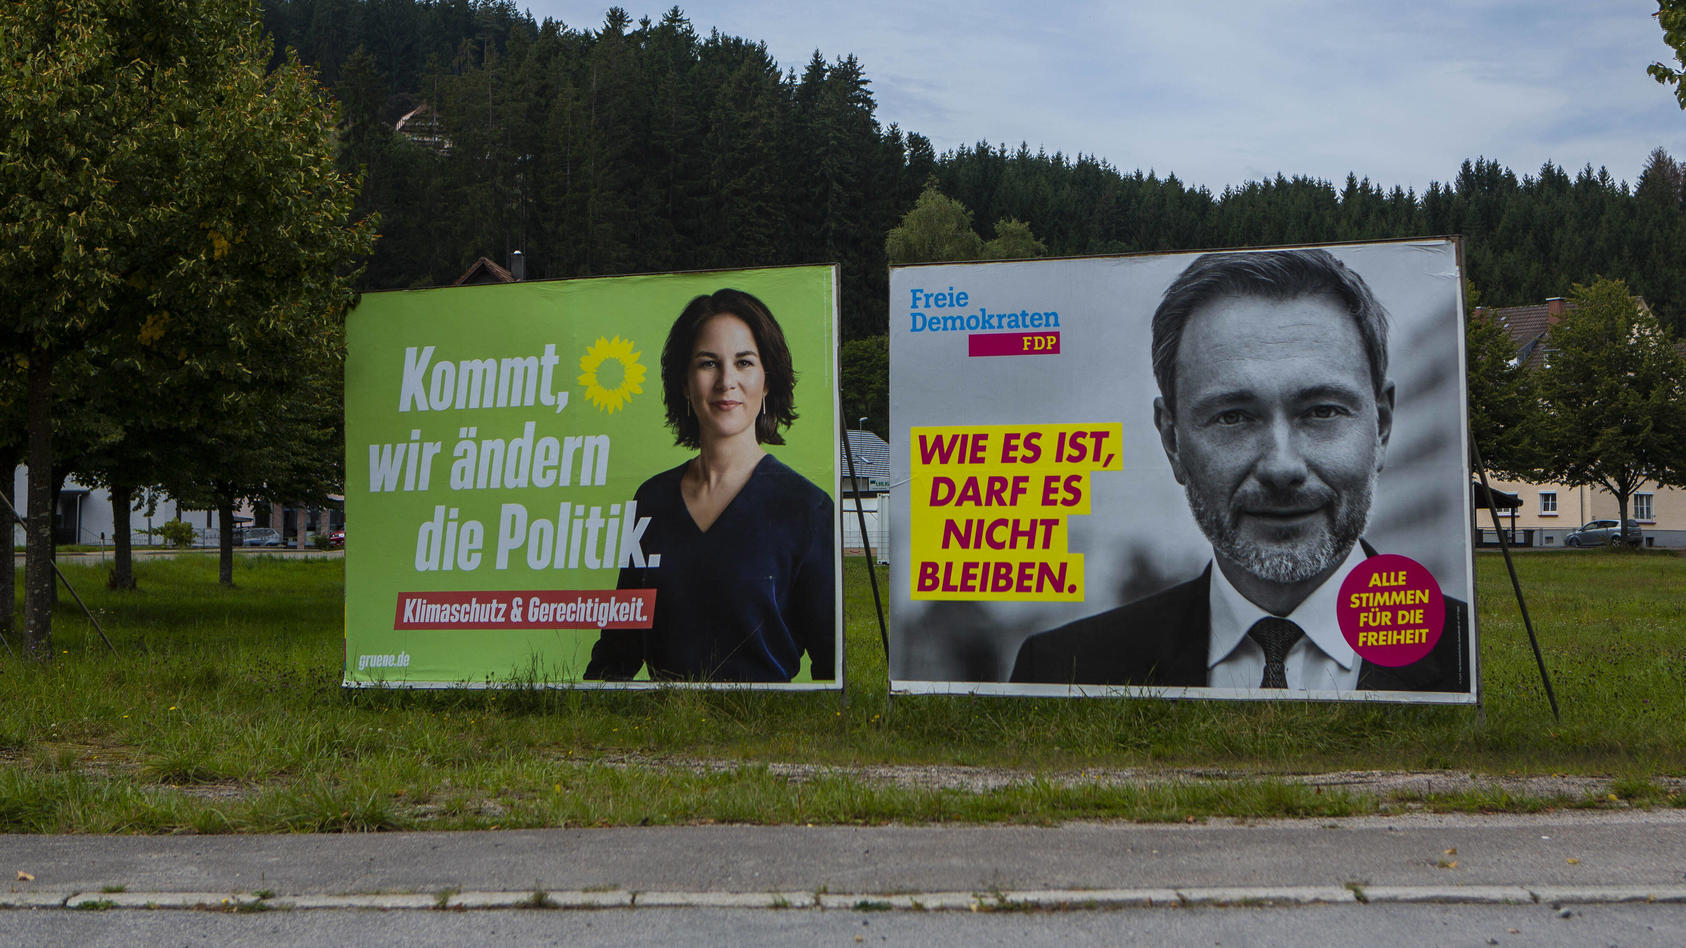  Wahlplakate zur Bundestagswahl im September 2021 sind in Baiersbronn  Landkreis Freudenstadt Baden-Württemberg  zu sehen. Die Grünen Annalena Baerbock Kommt, wir ändern die Politik FDP Christian Lindner Wie es ist, darf es nicht bleiben Wahlplakate 